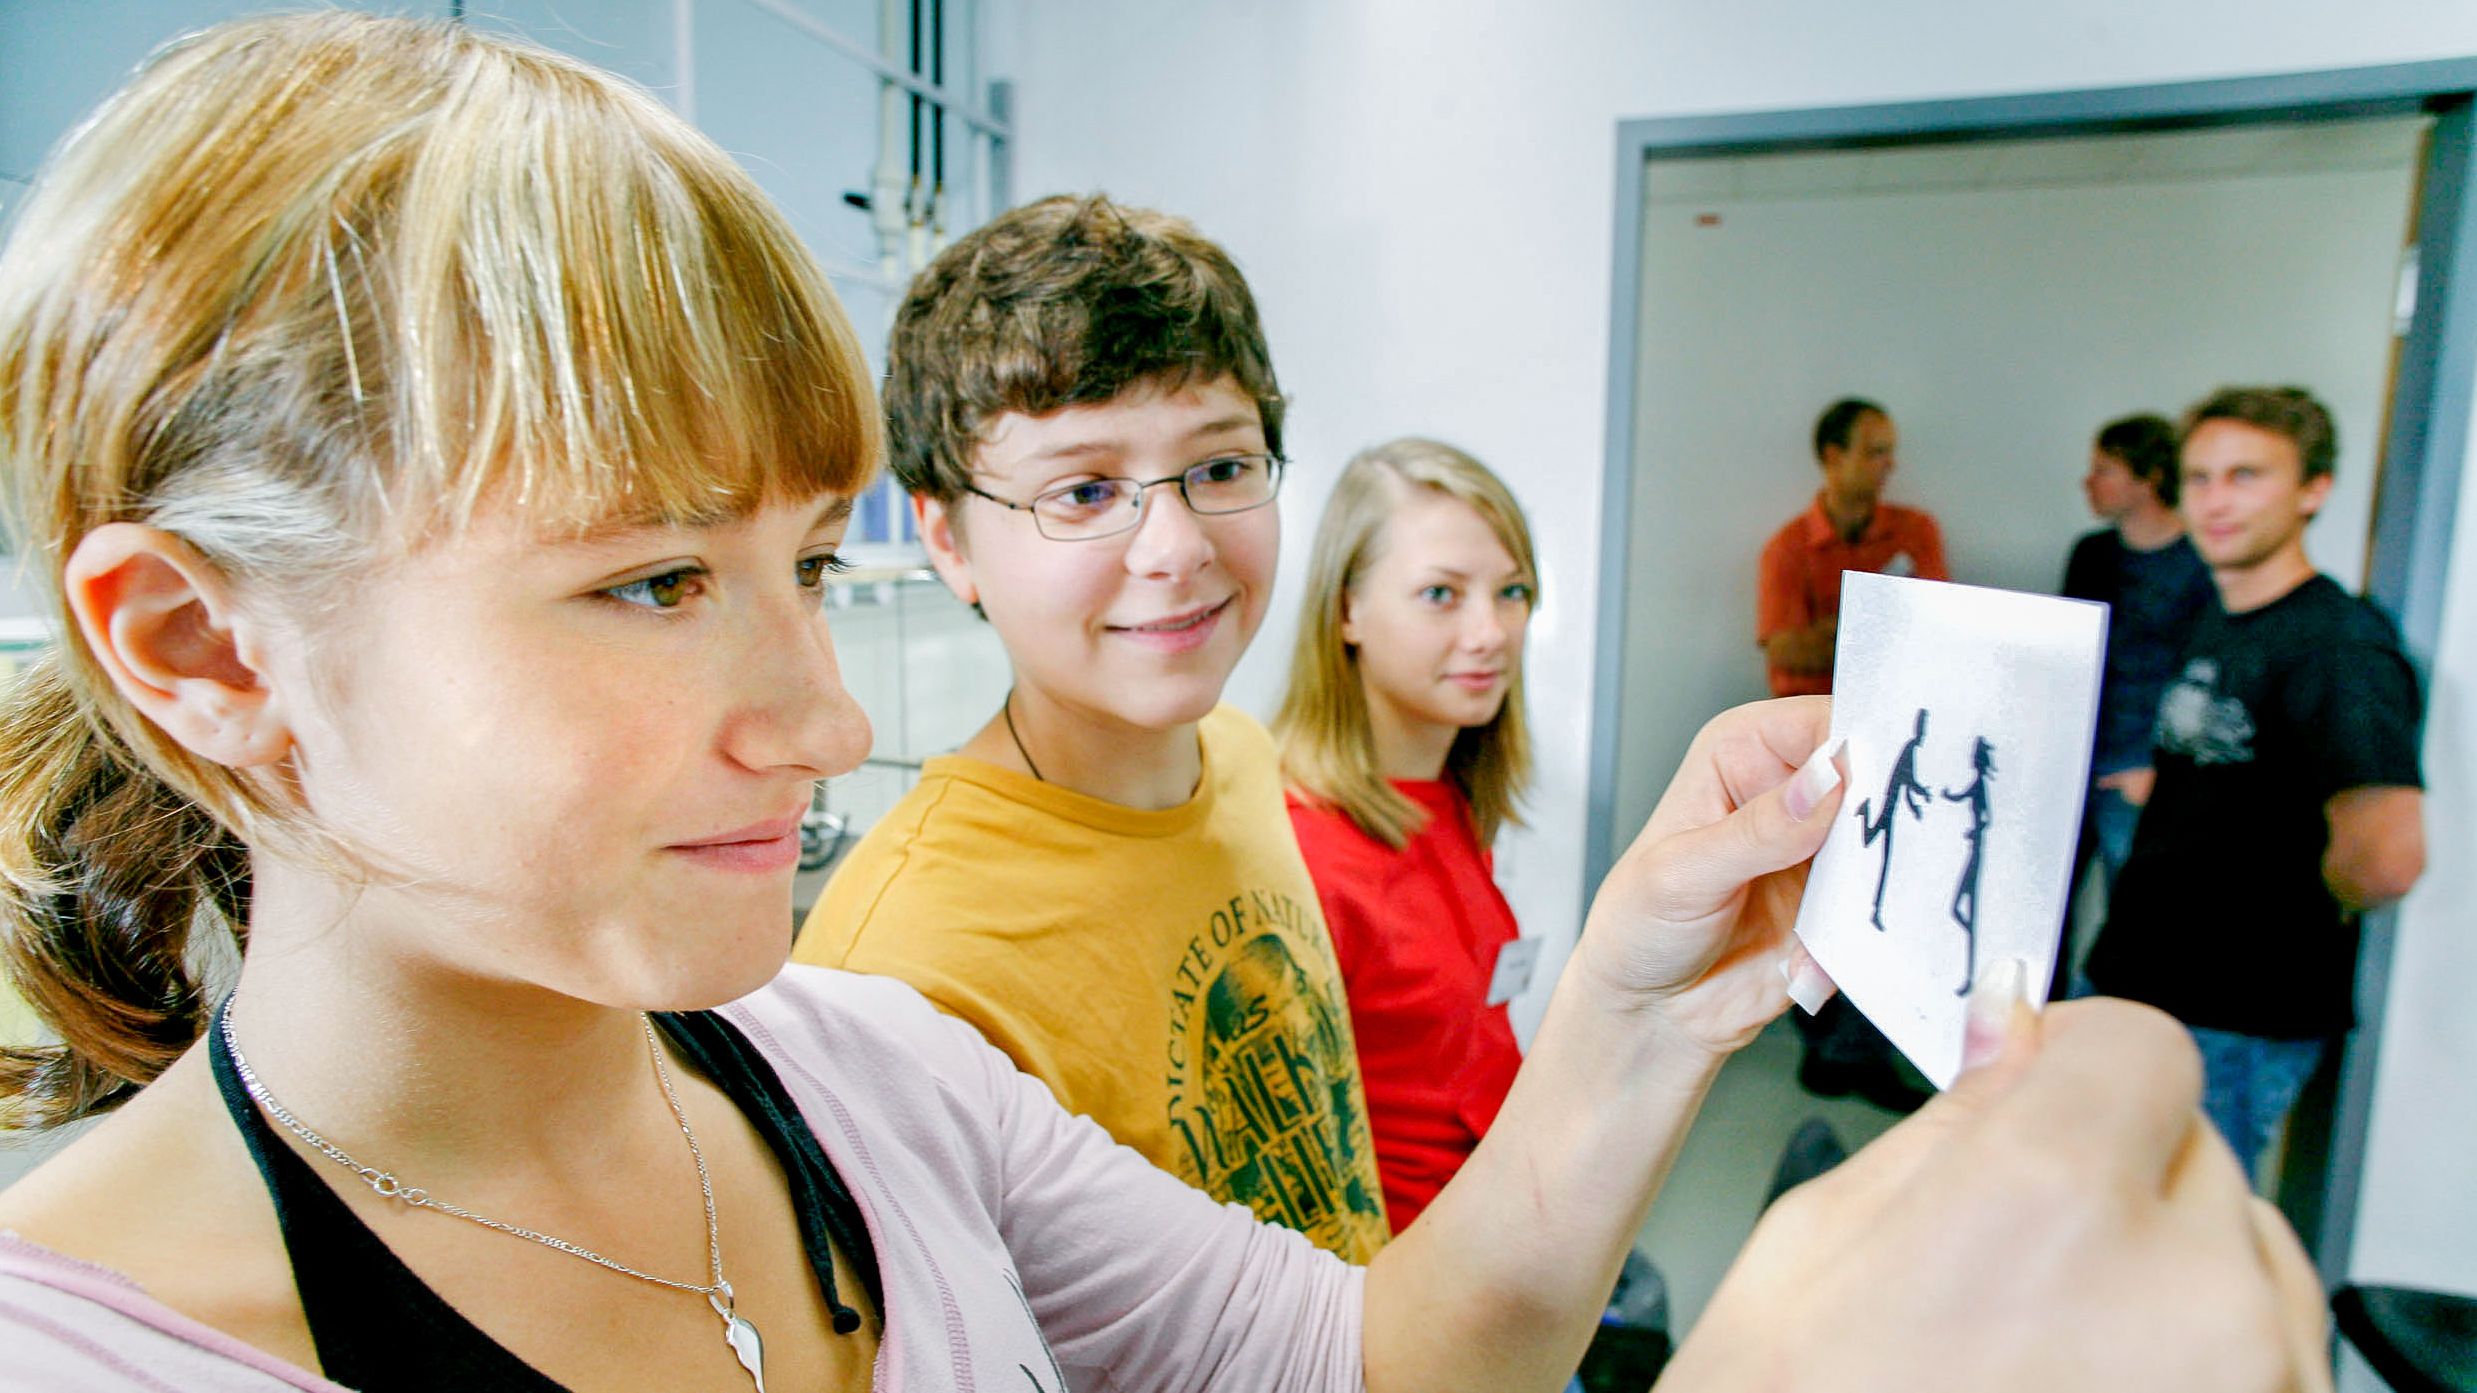 Mehrere Schüler stehen in einem Seminarraum, das Mädchen im Vordergrund blickt auf eine schwarz-weiße Zeichnung.